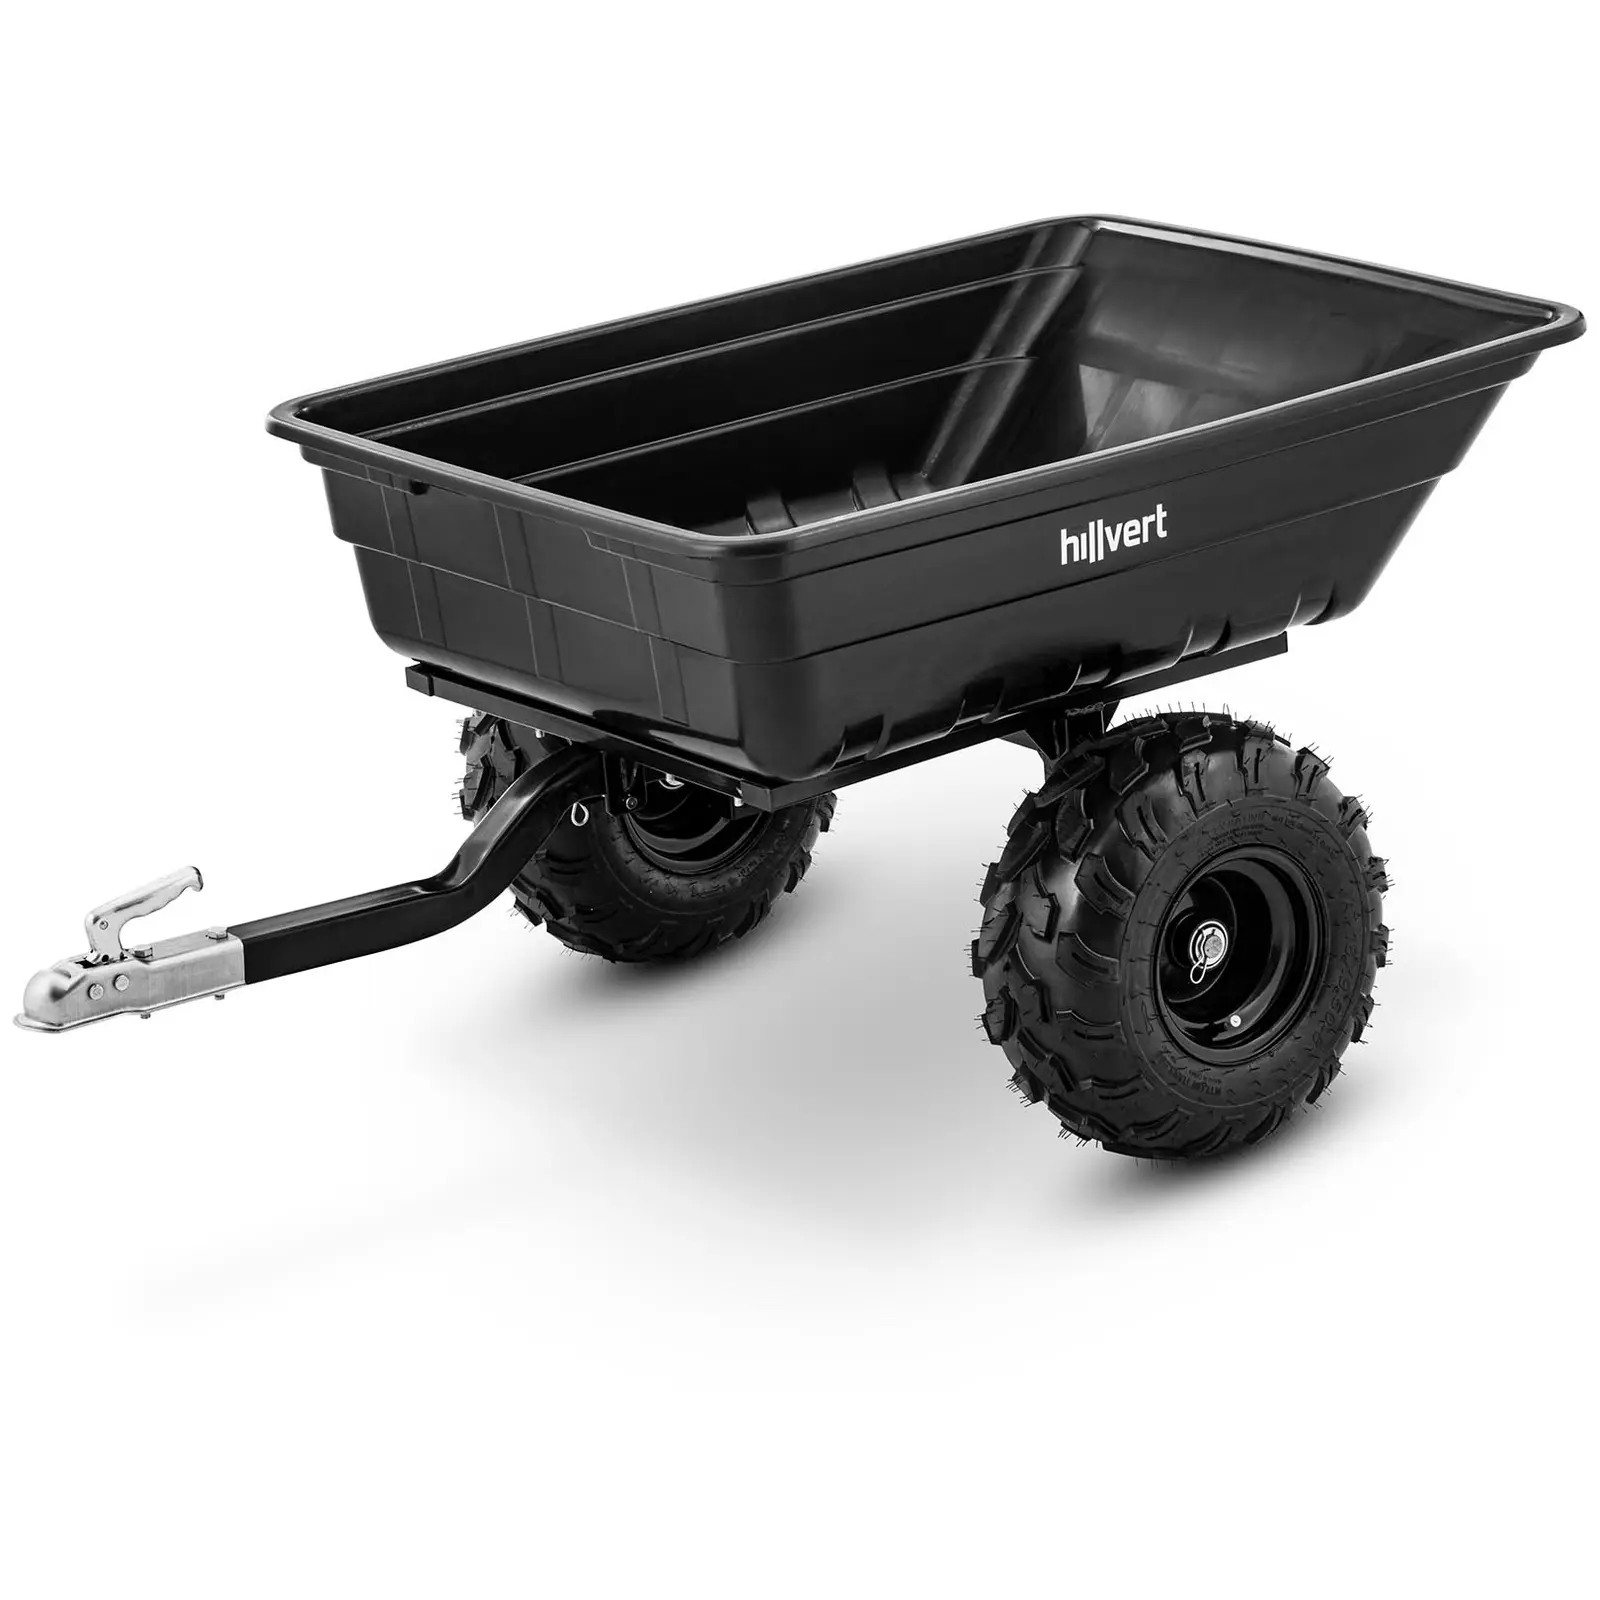 Gartenwagen - mit Anhängerkupplung - 700 kg - kippbar - 210 L